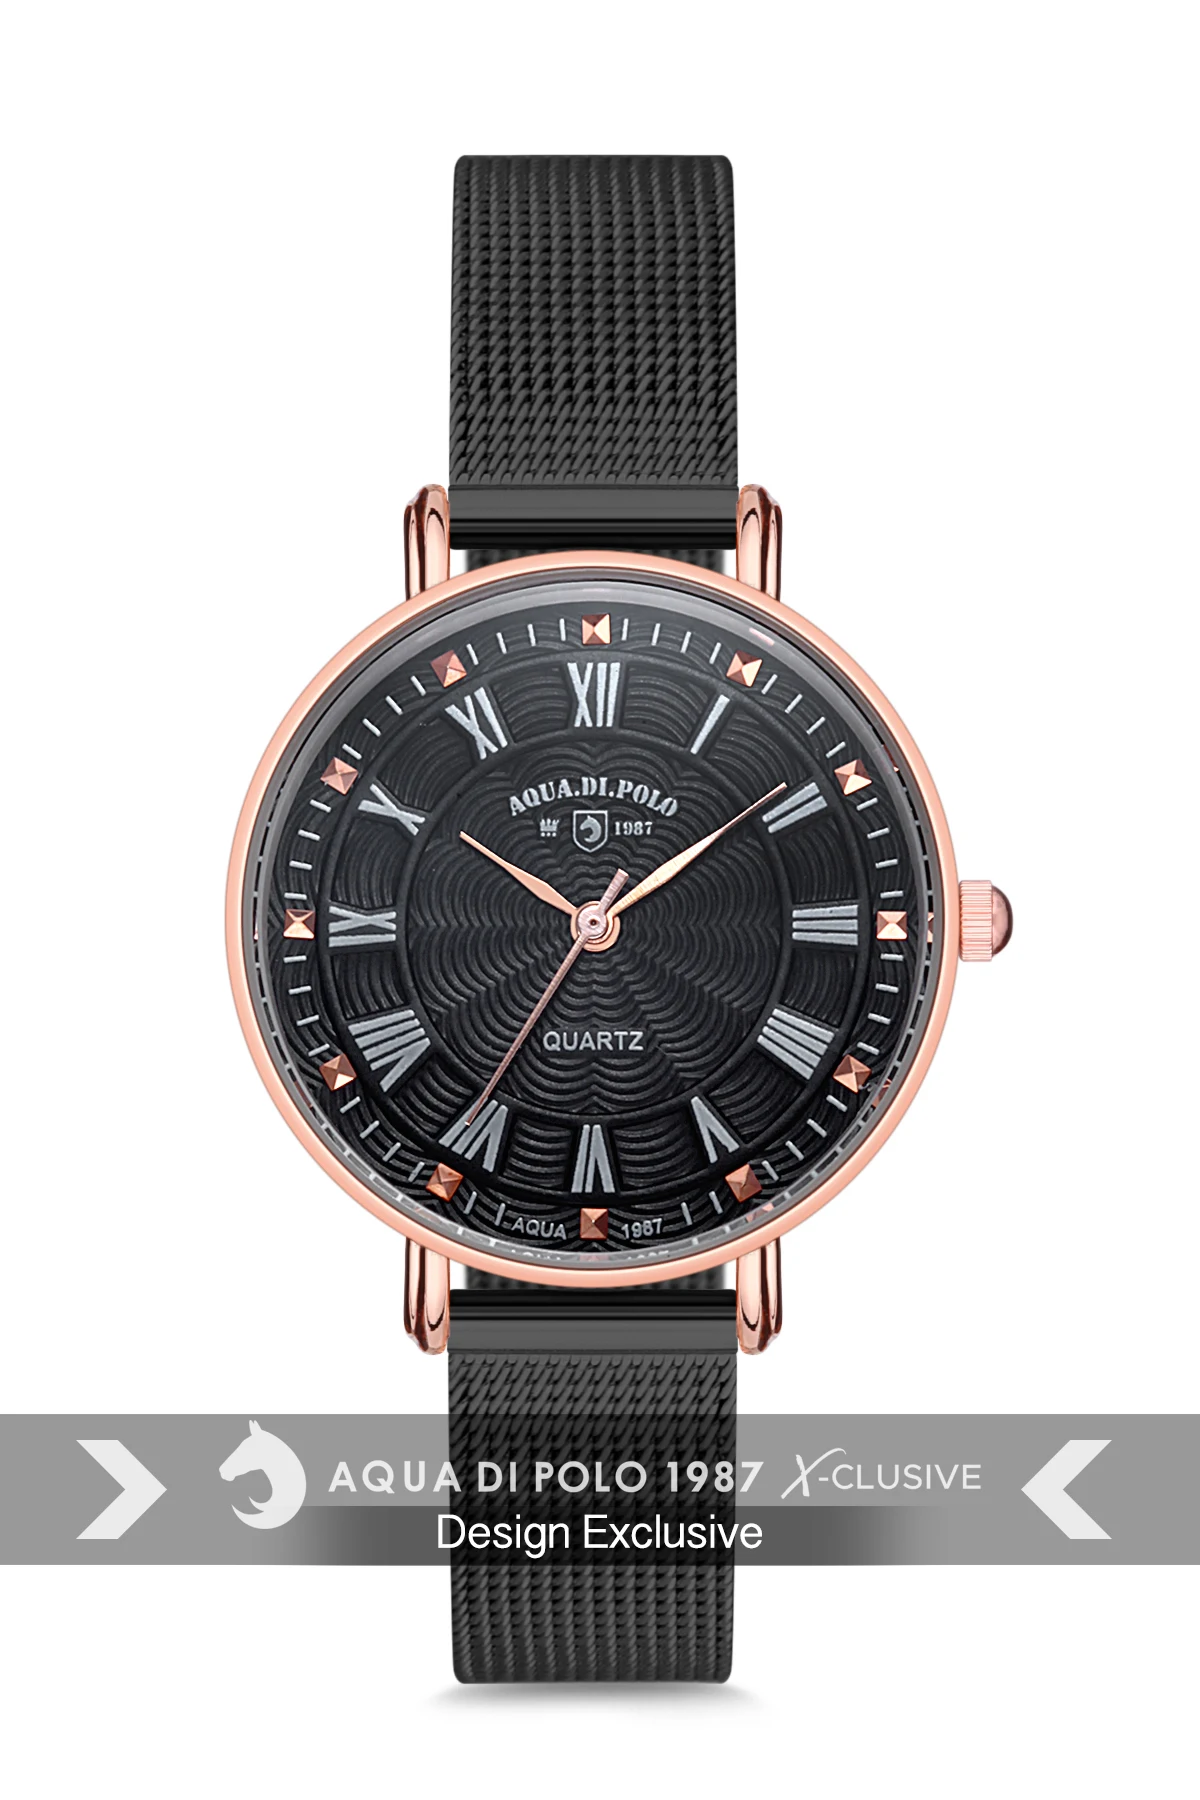 

2022 женские Роскошные наручные часы лучшего бренда с браслетом отличного качества Aqua di Polo 1987 APSV1-A5759-KH332 сталь